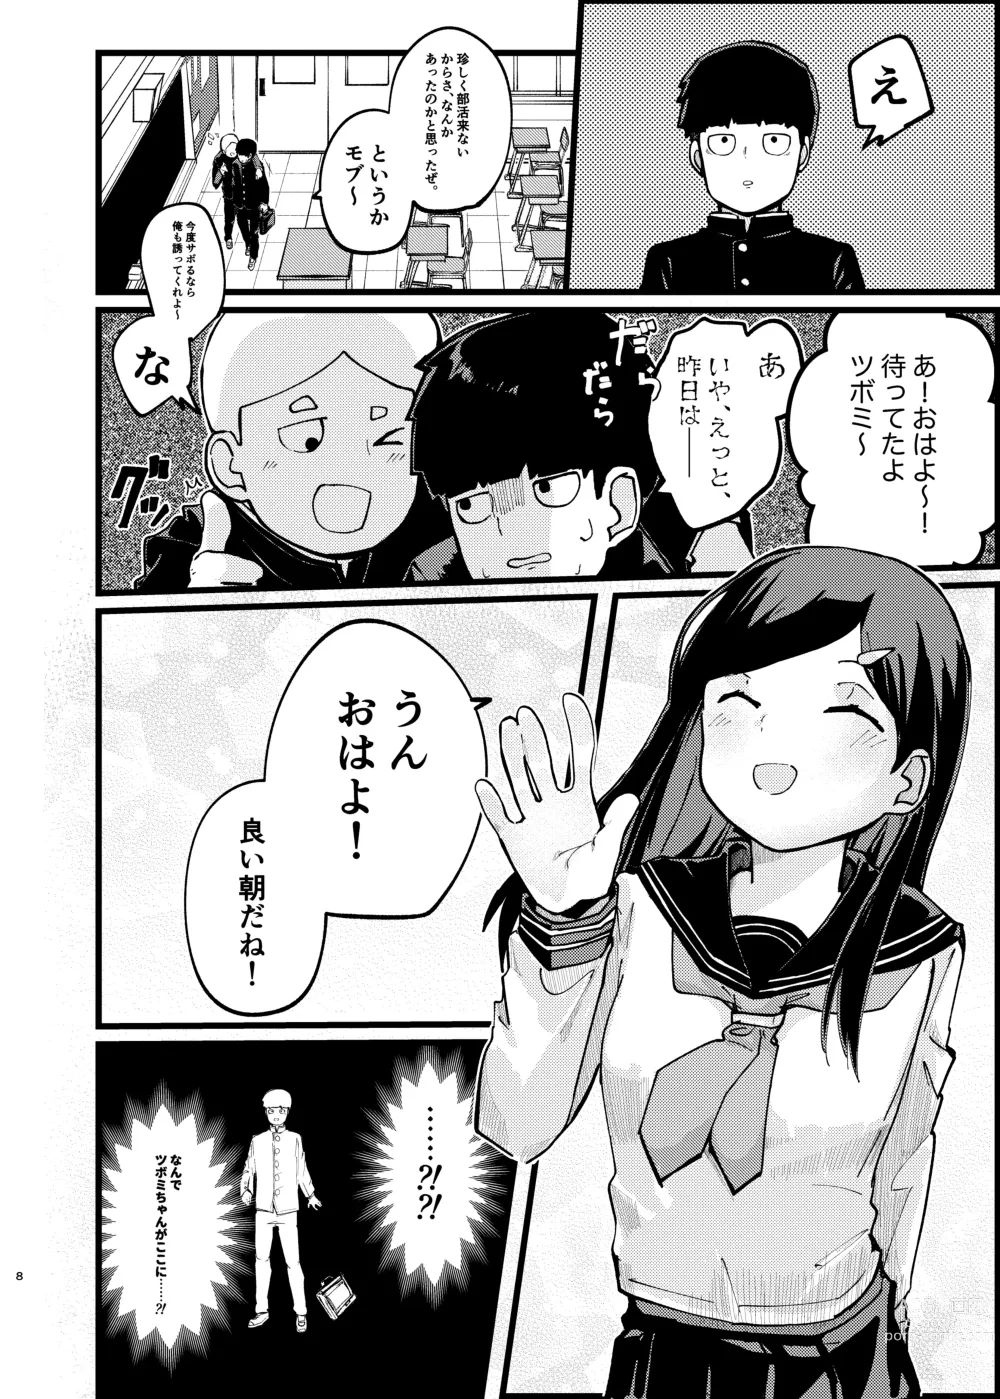 Page 7 of doujinshi Boku ga Saki ni Suki datta noni